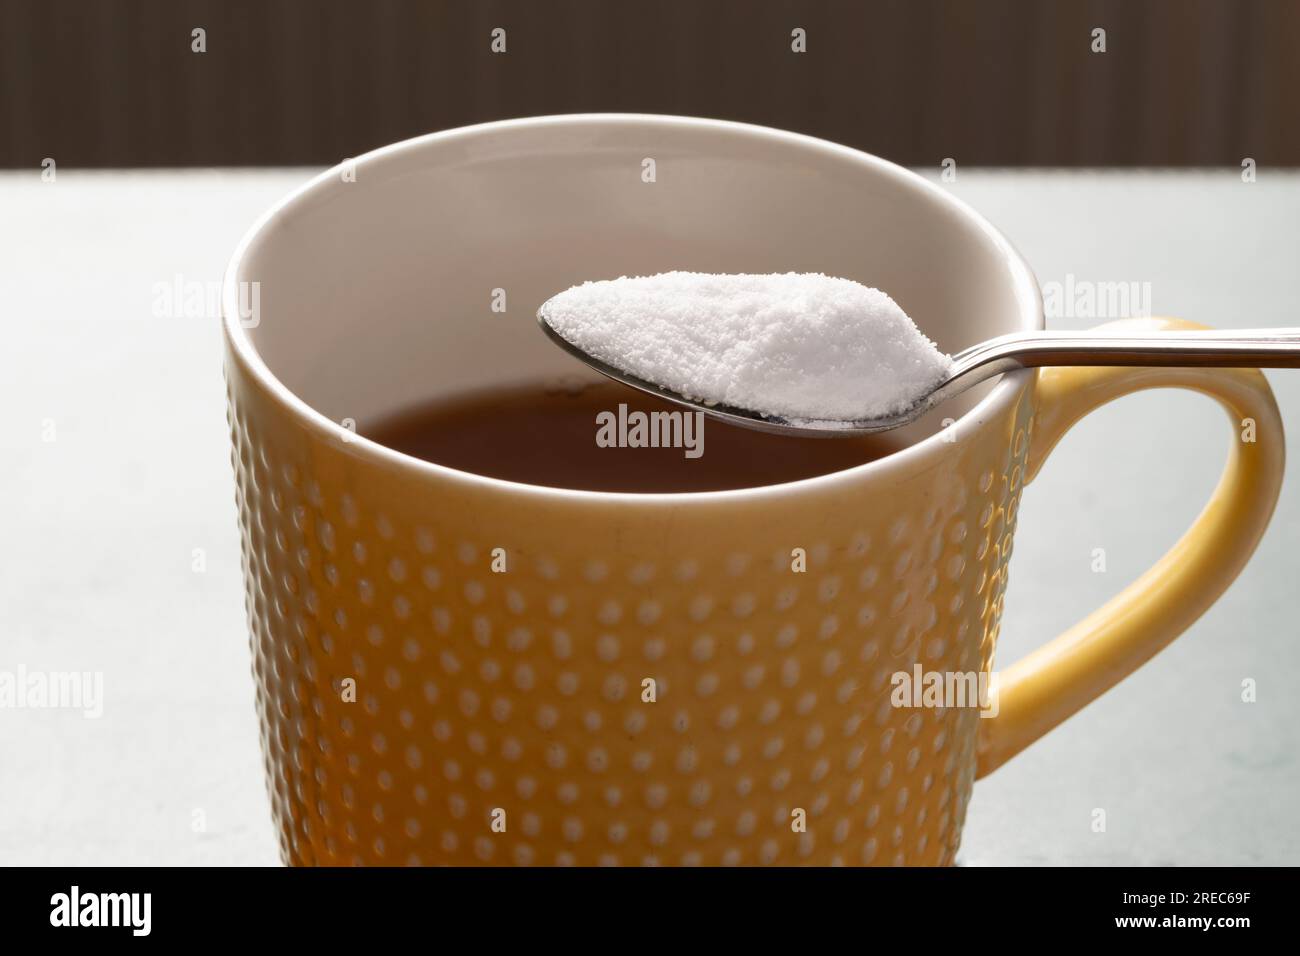 Süßstoff auf Aspartaminbasis auf Teelöffel über einer Tasse Tee. Künstlicher Süßstoff. Stockfoto